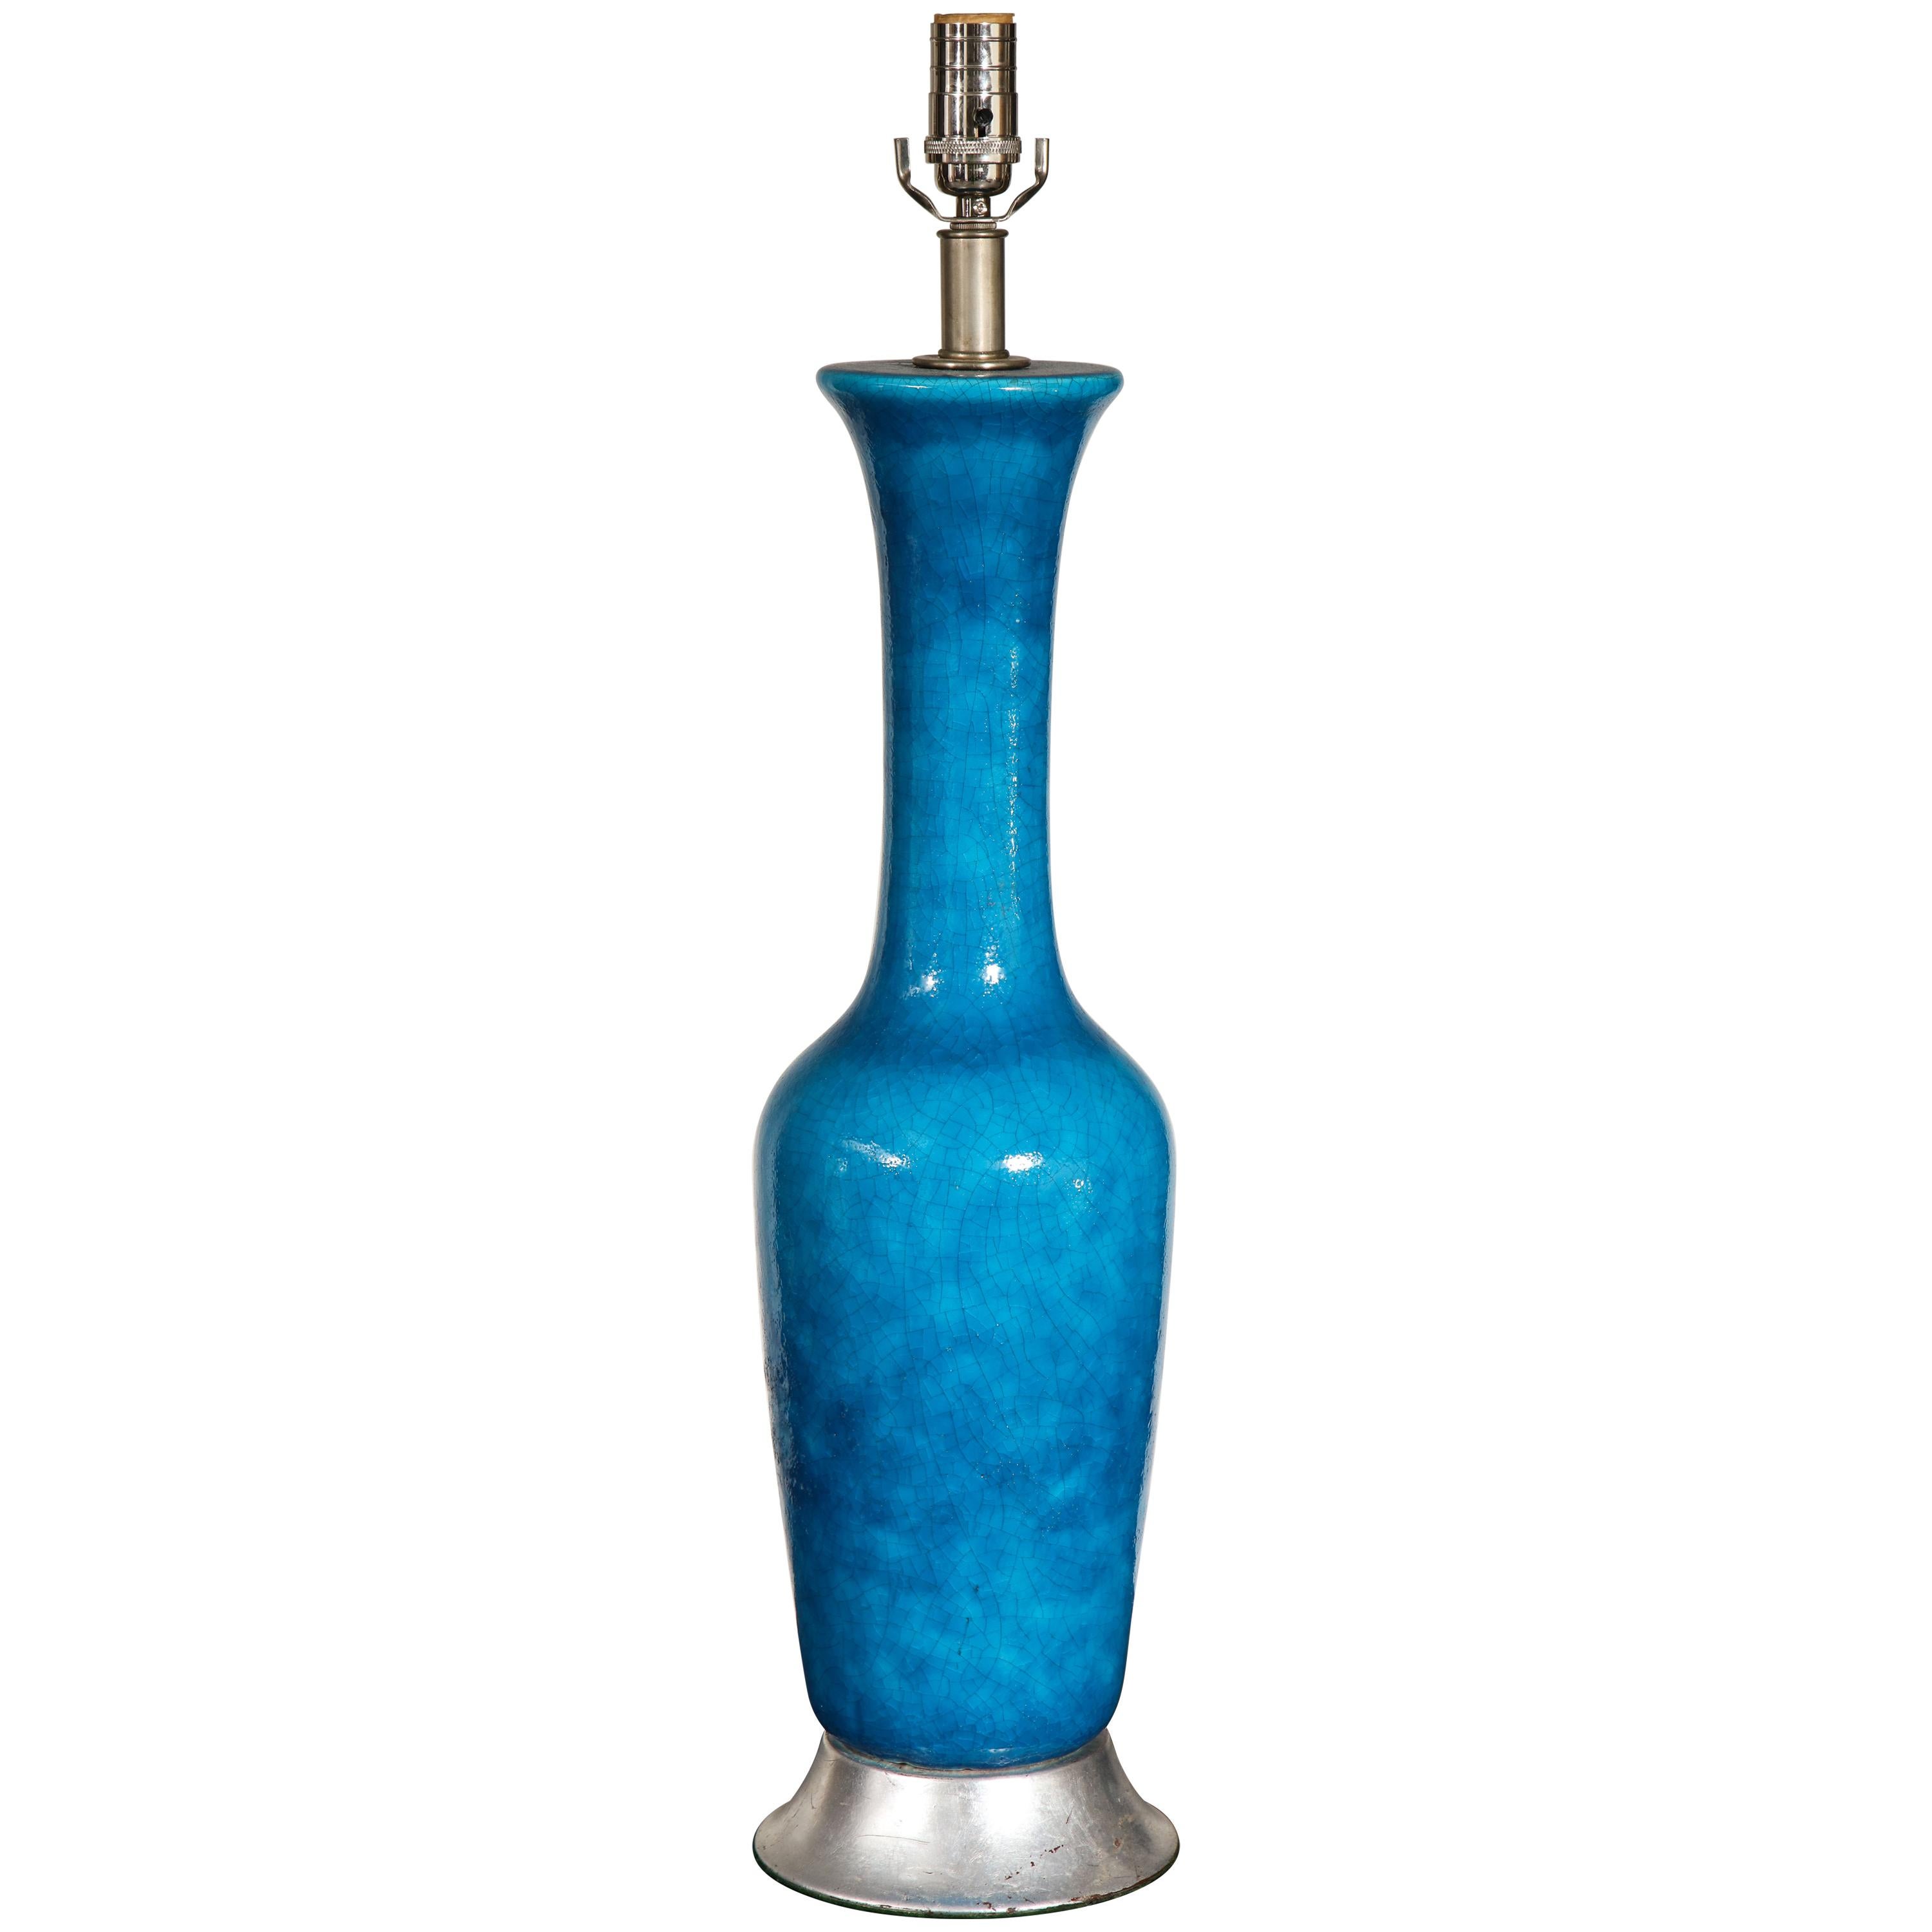 Vase en céramique turquoise à utiliser comme lampe